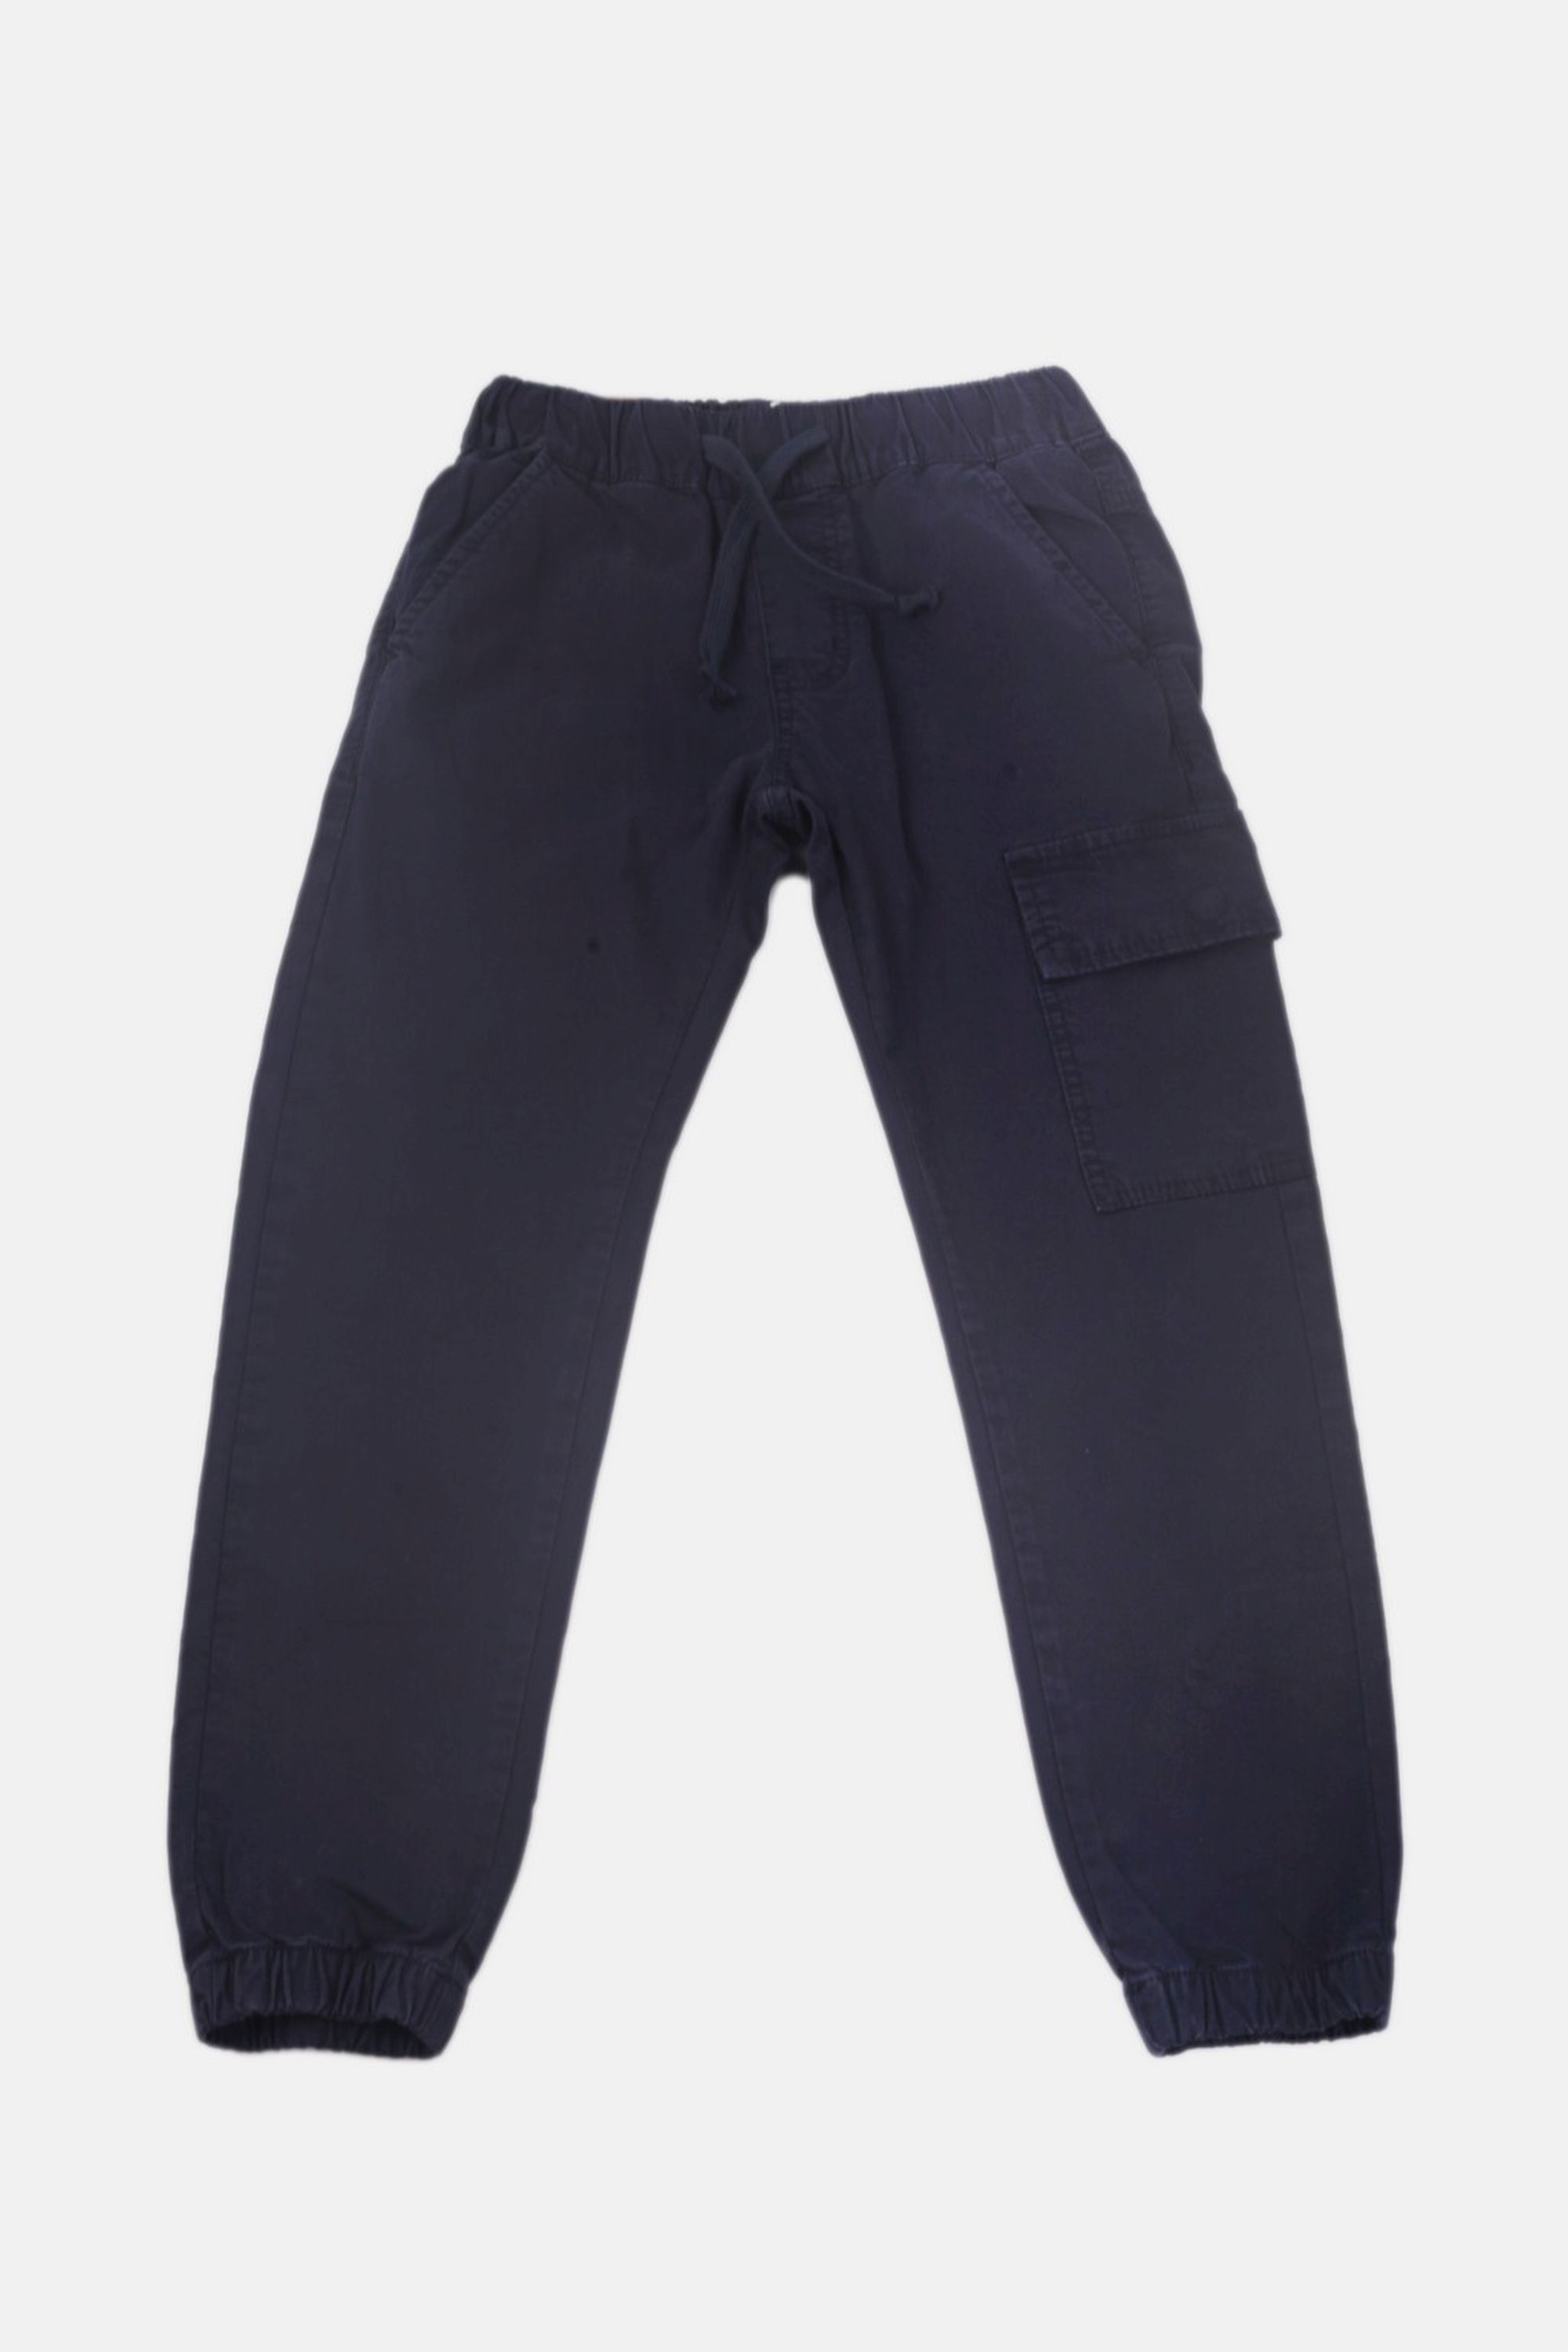 Chlapecké bavlněné kalhoty s gumou v pase/Hnědá, modrá Barva: Modrá, Velikost: vel. 1 (78/86 cm)